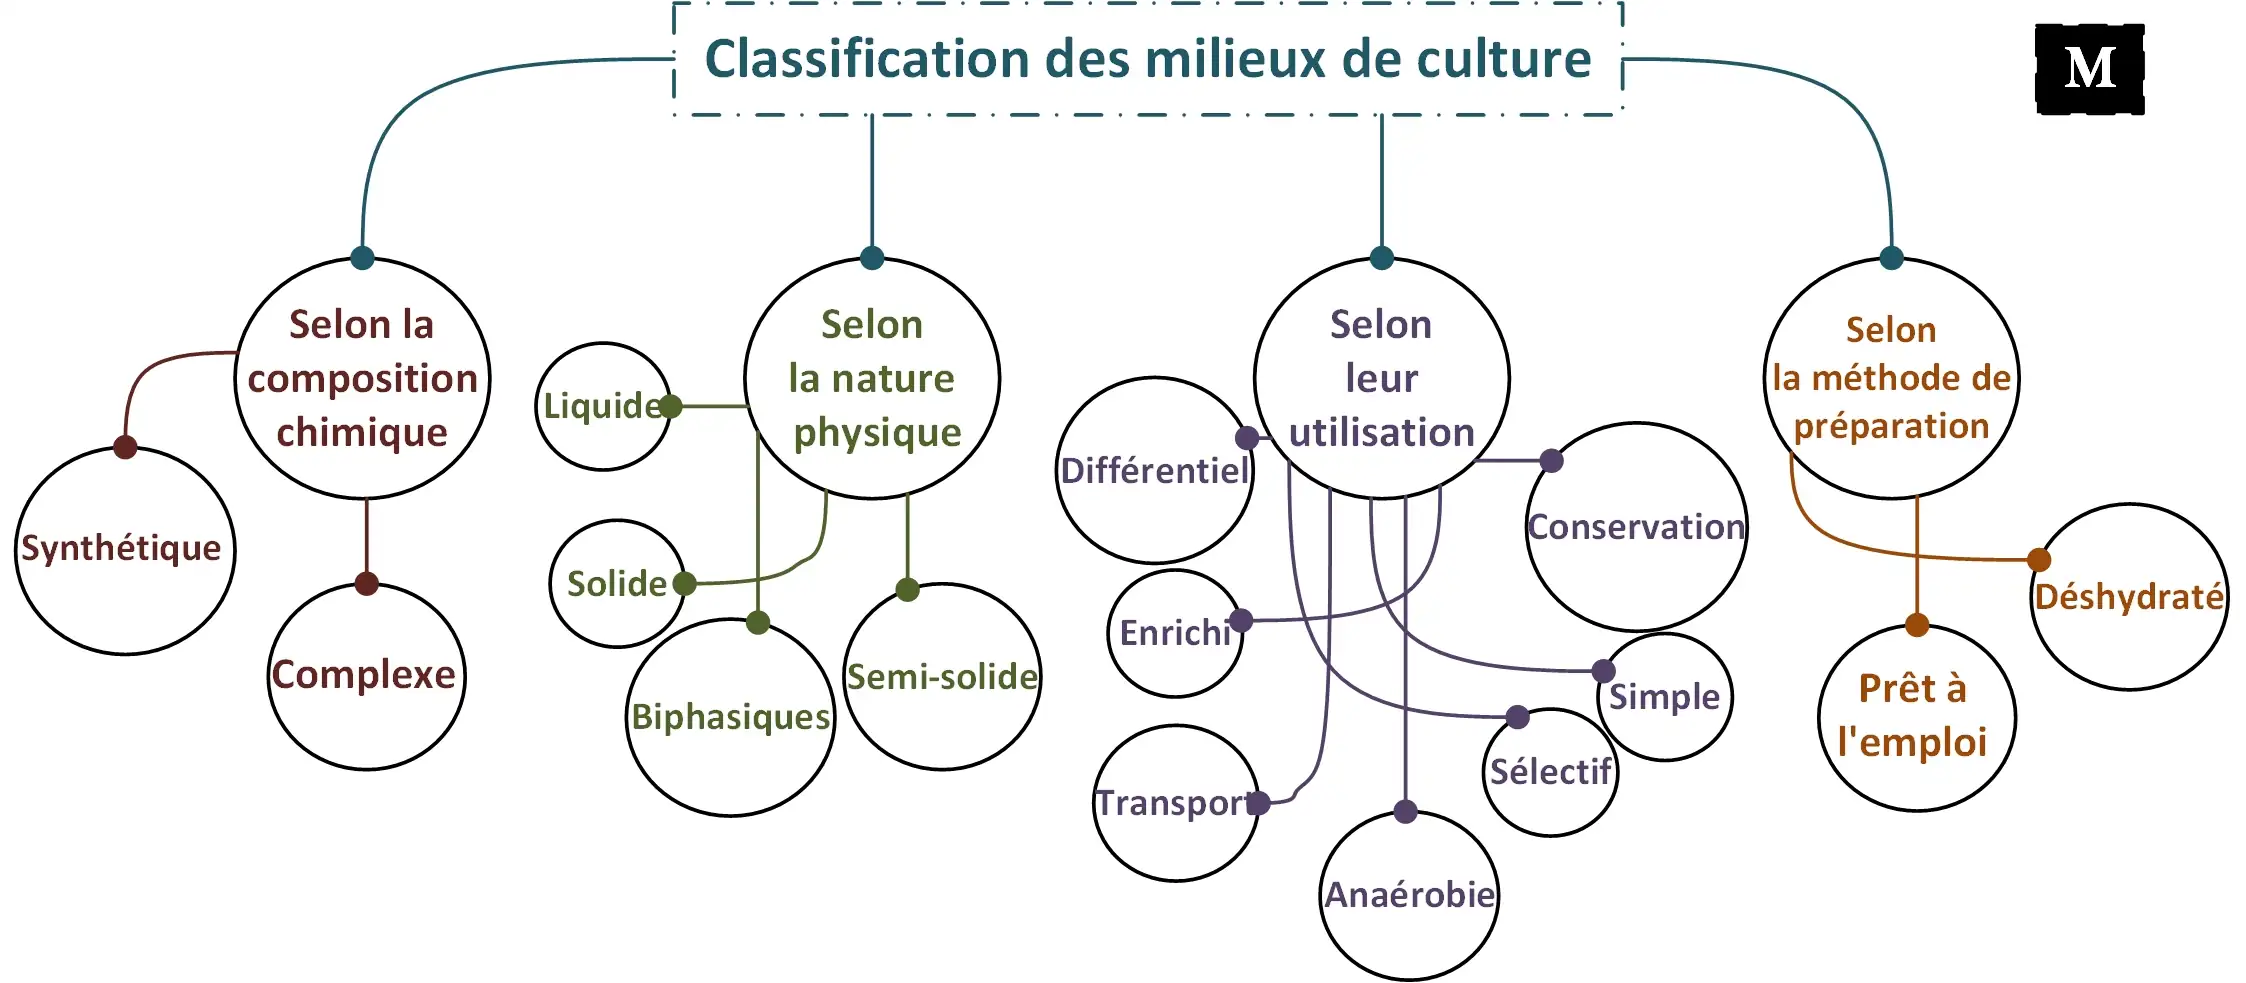 Classification des milieux de culture